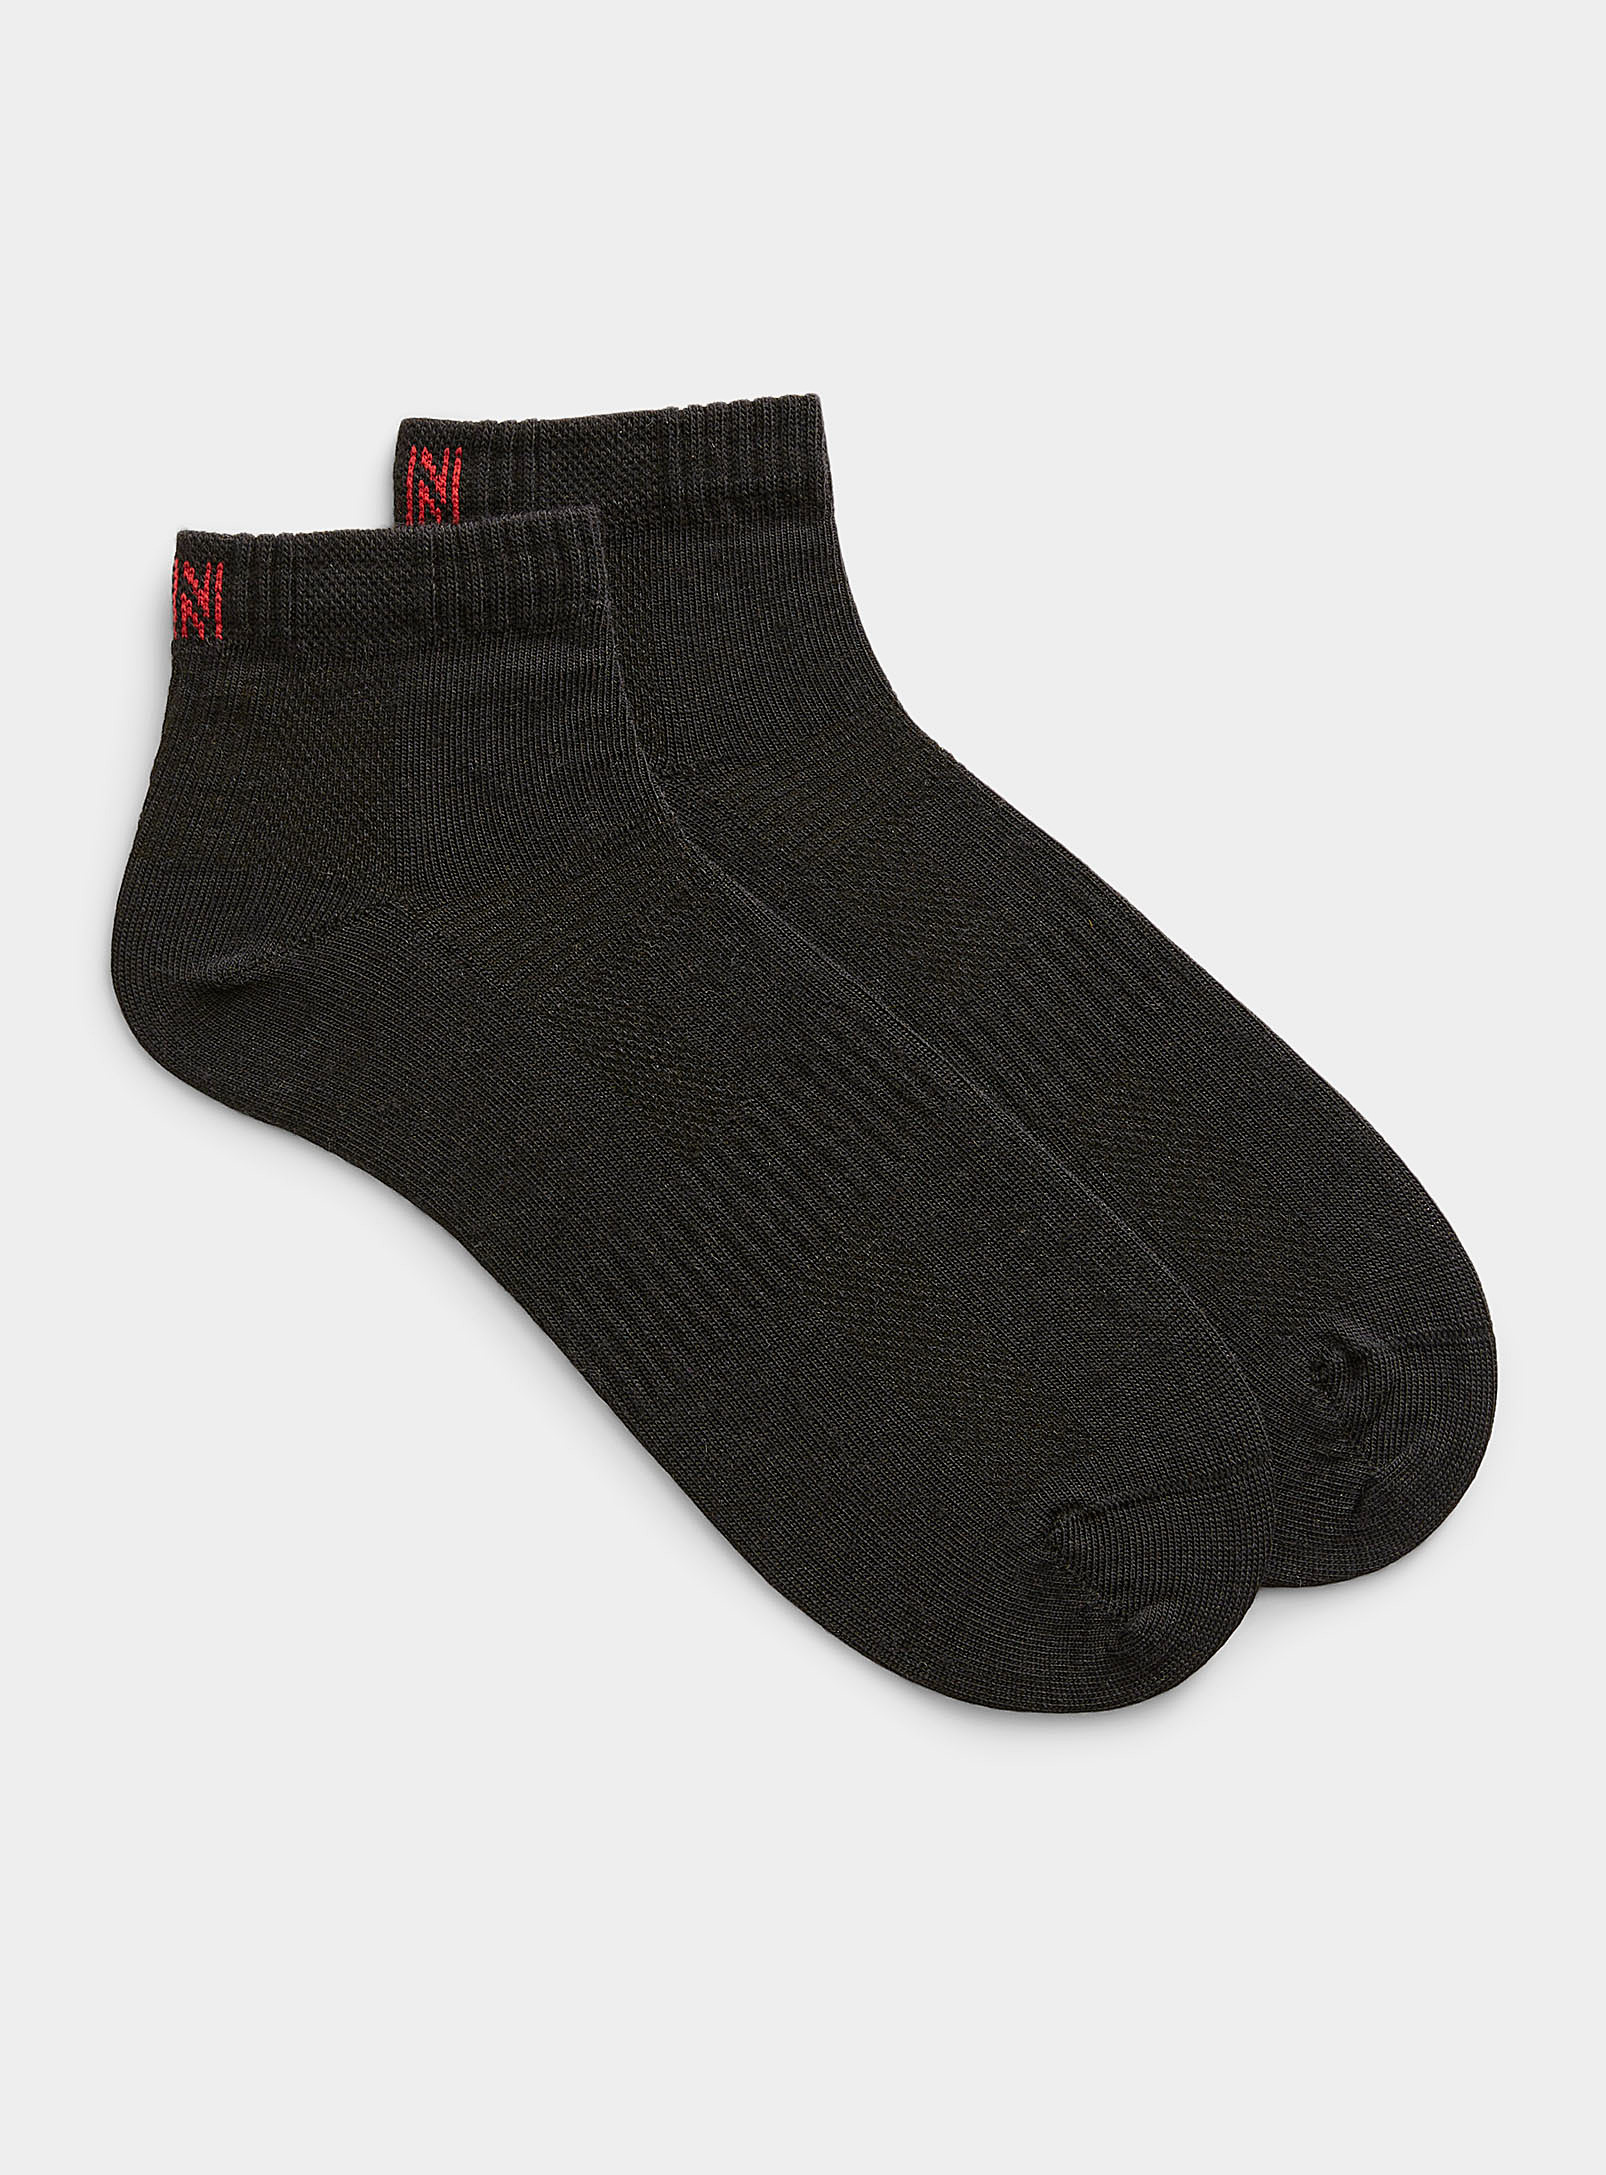 I.fiv5 Merino Hiking Socks Set Of 2 In Black